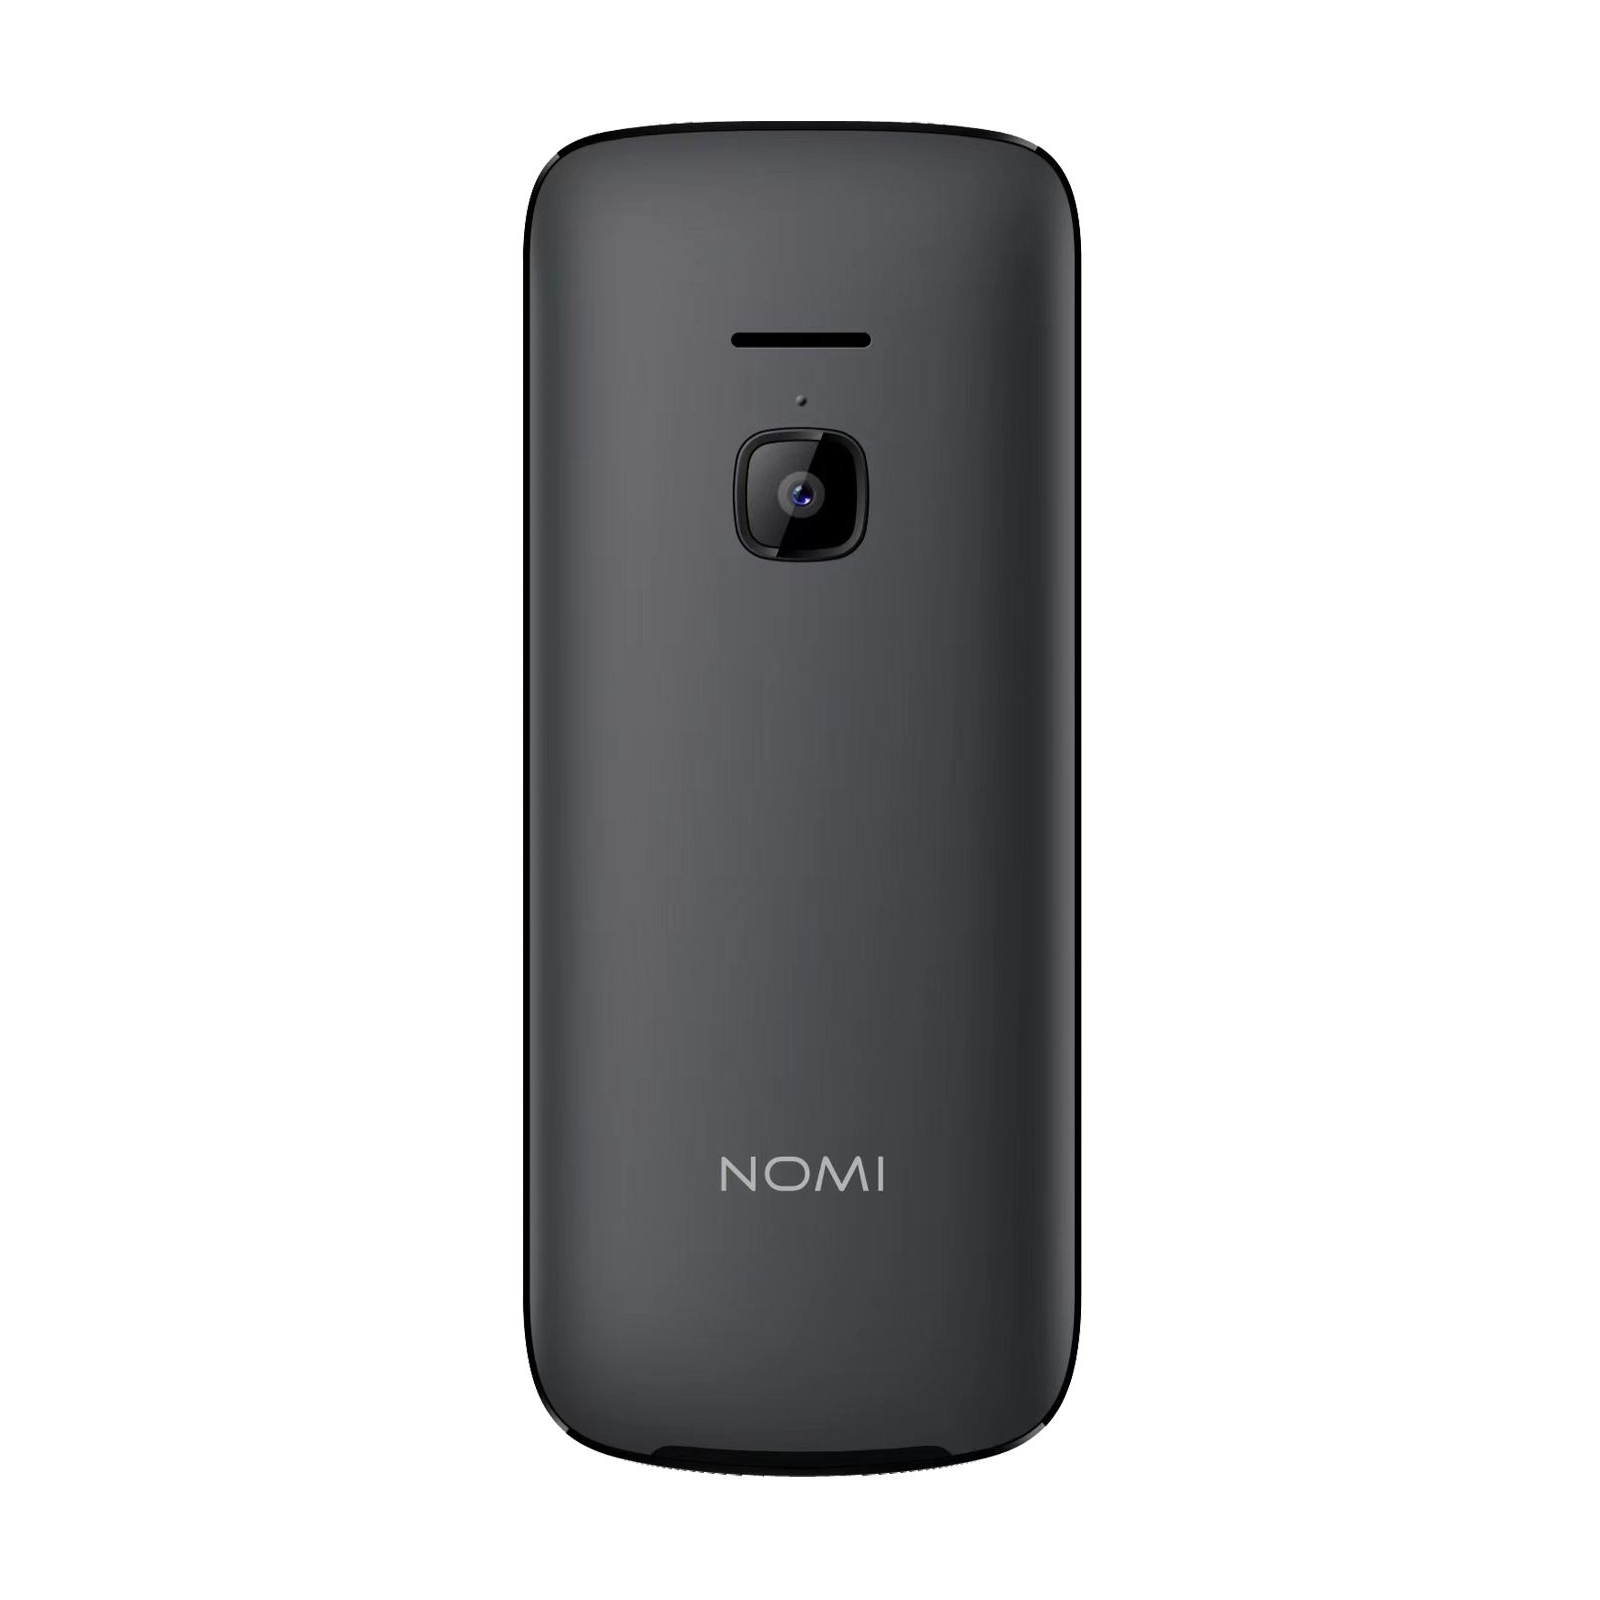 Мобильный телефон Nomi i2403 Red изображение 2